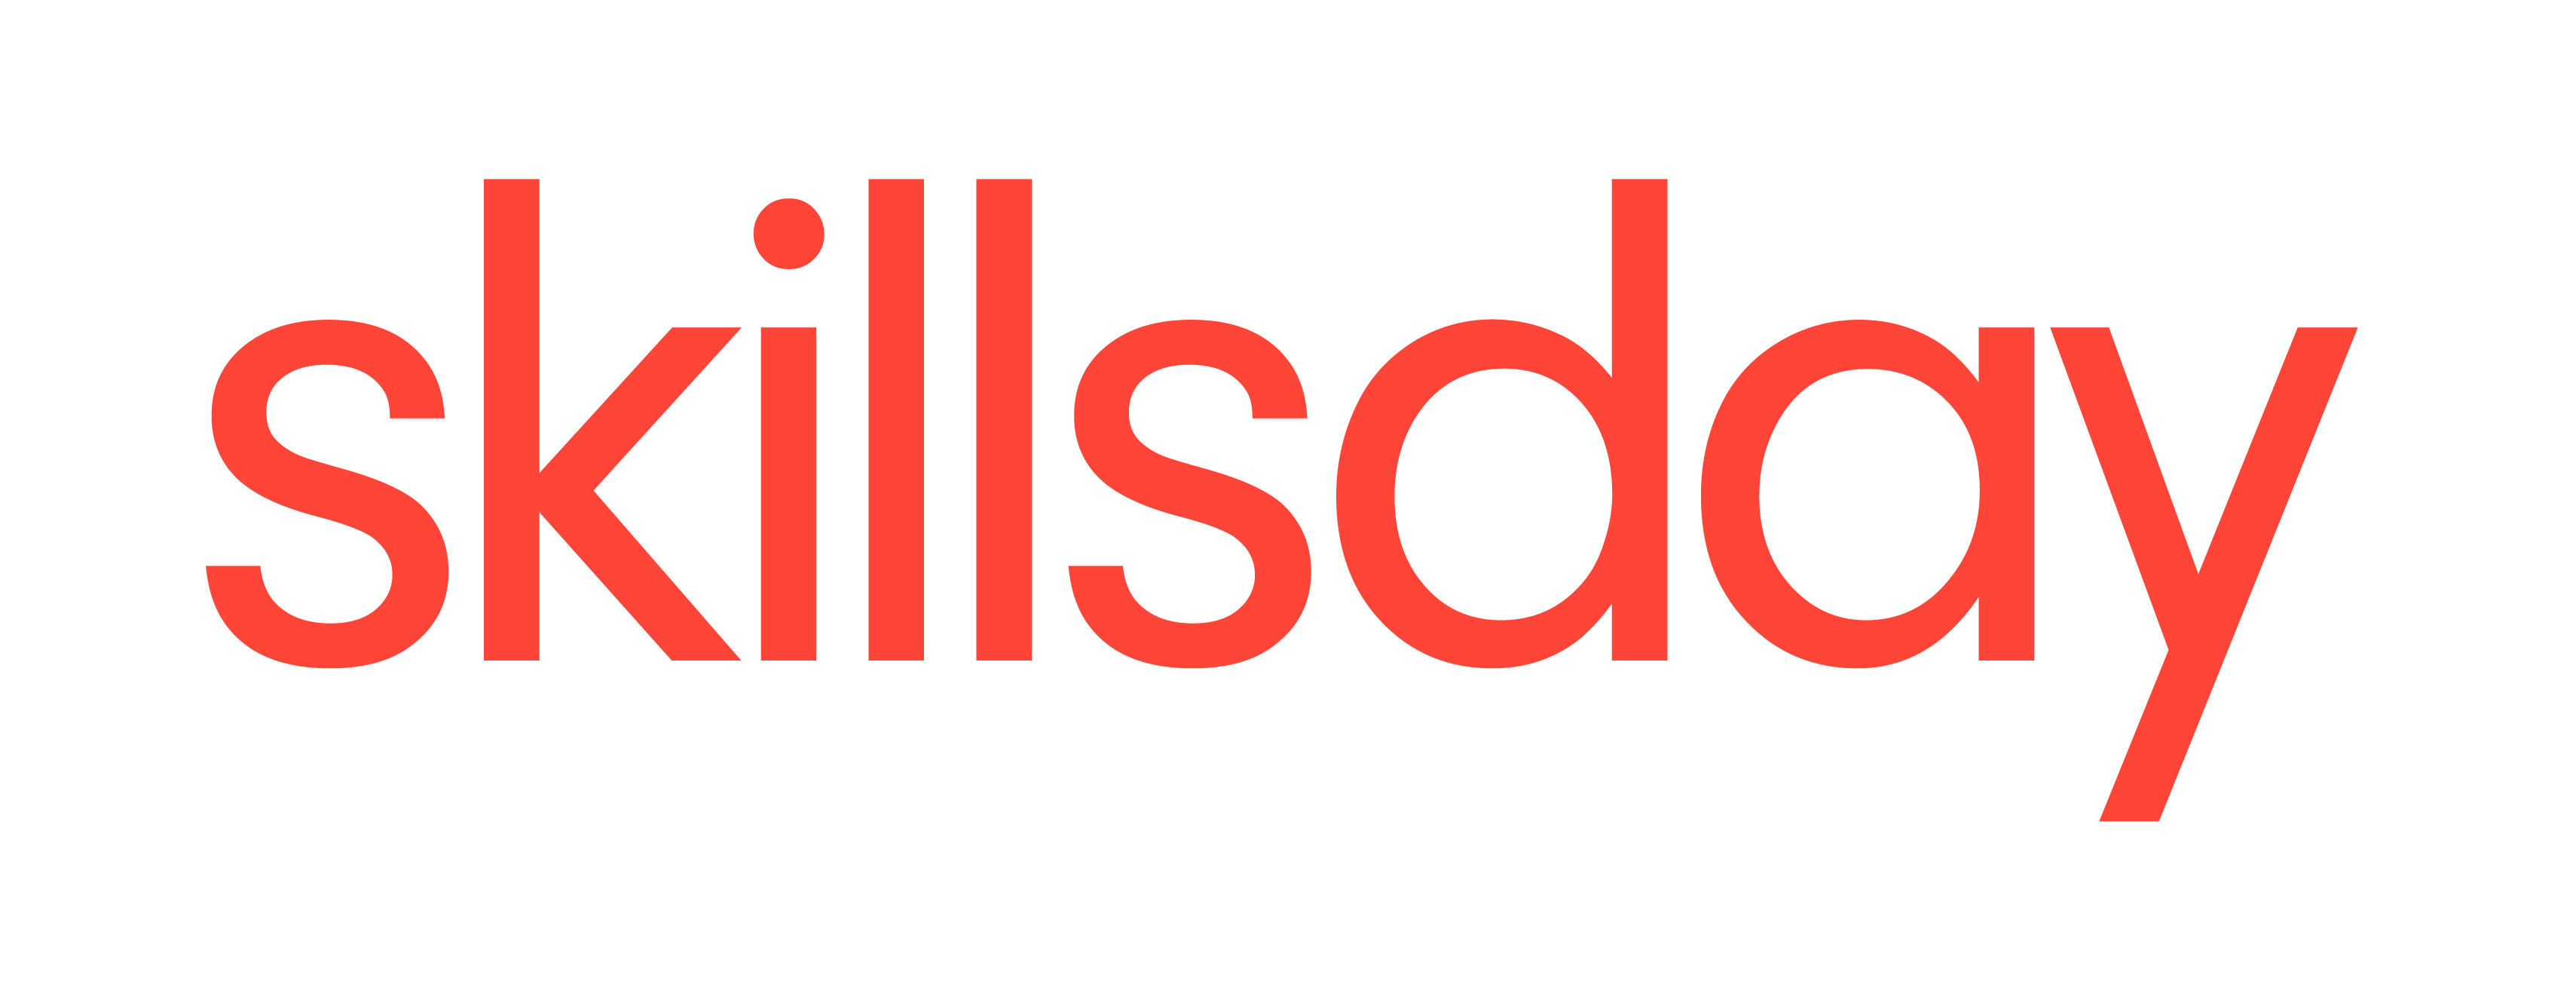 logo_skillsday-03-1